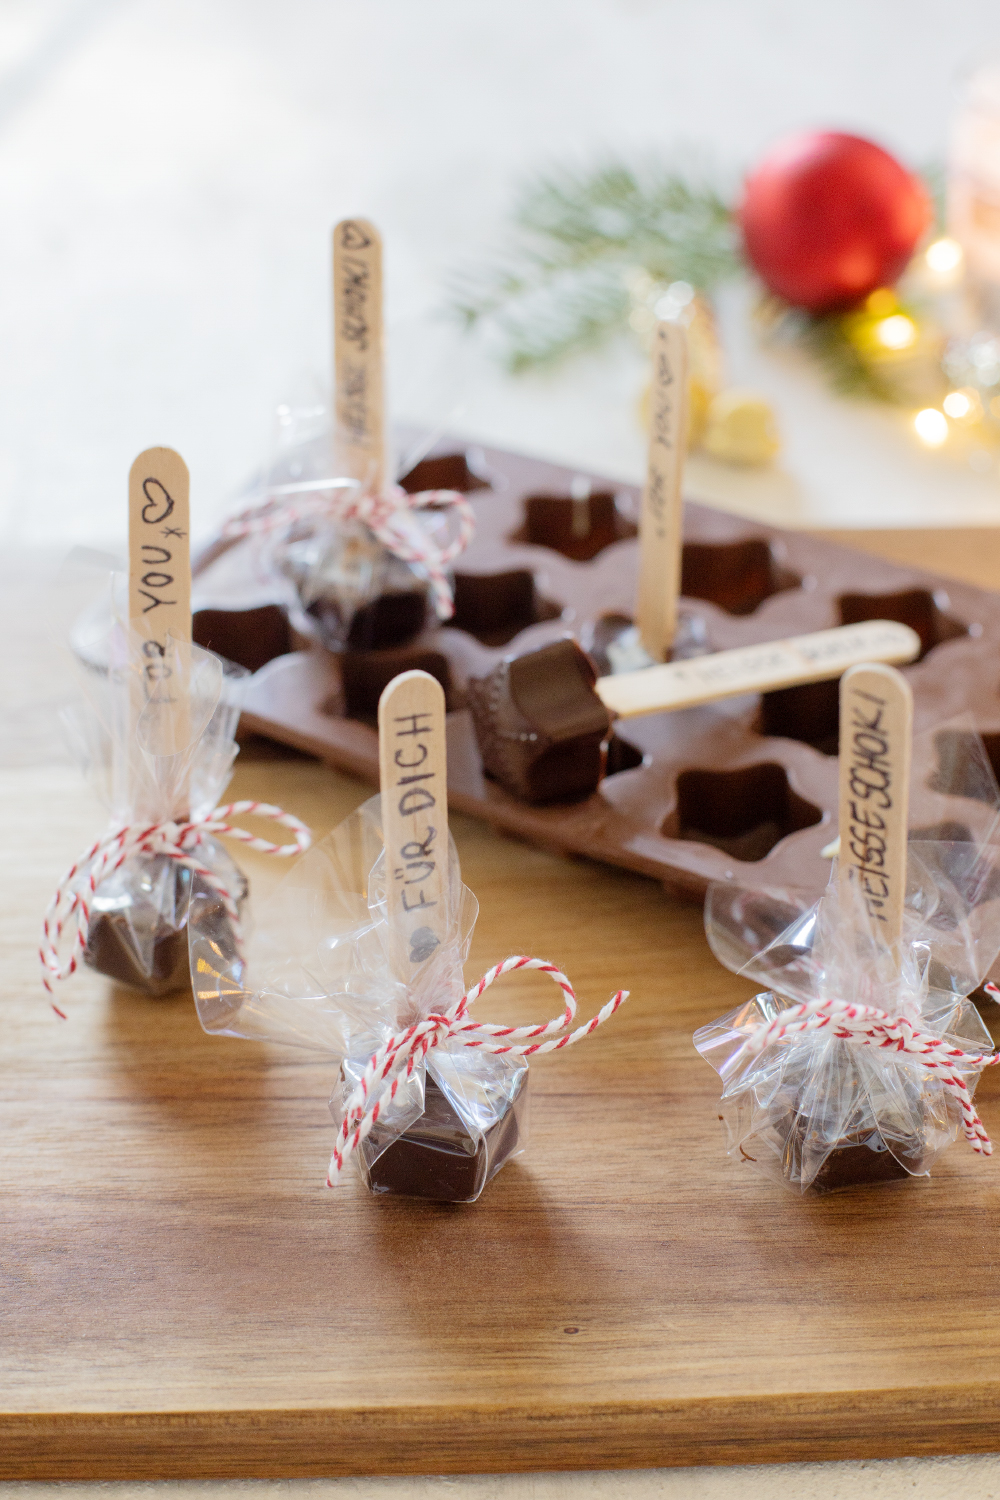 Geschenke aus der Küche: Schokolade am Stiel (für heiße Schokolade)